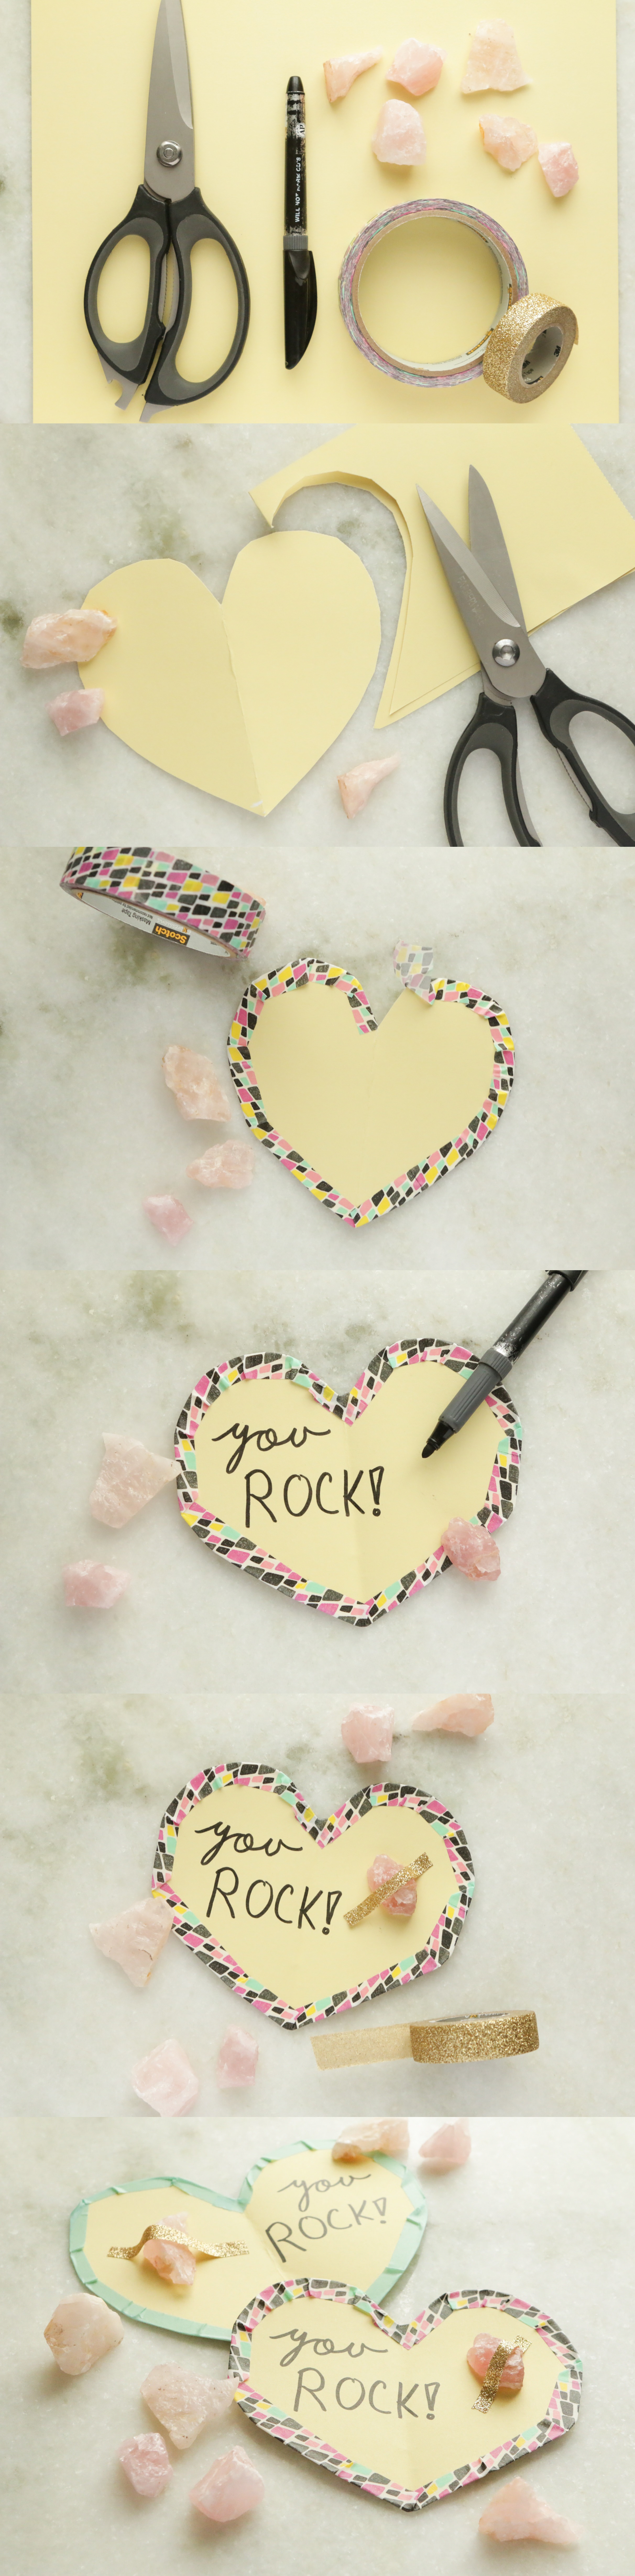 Calcite Rock Valentines Tutorial